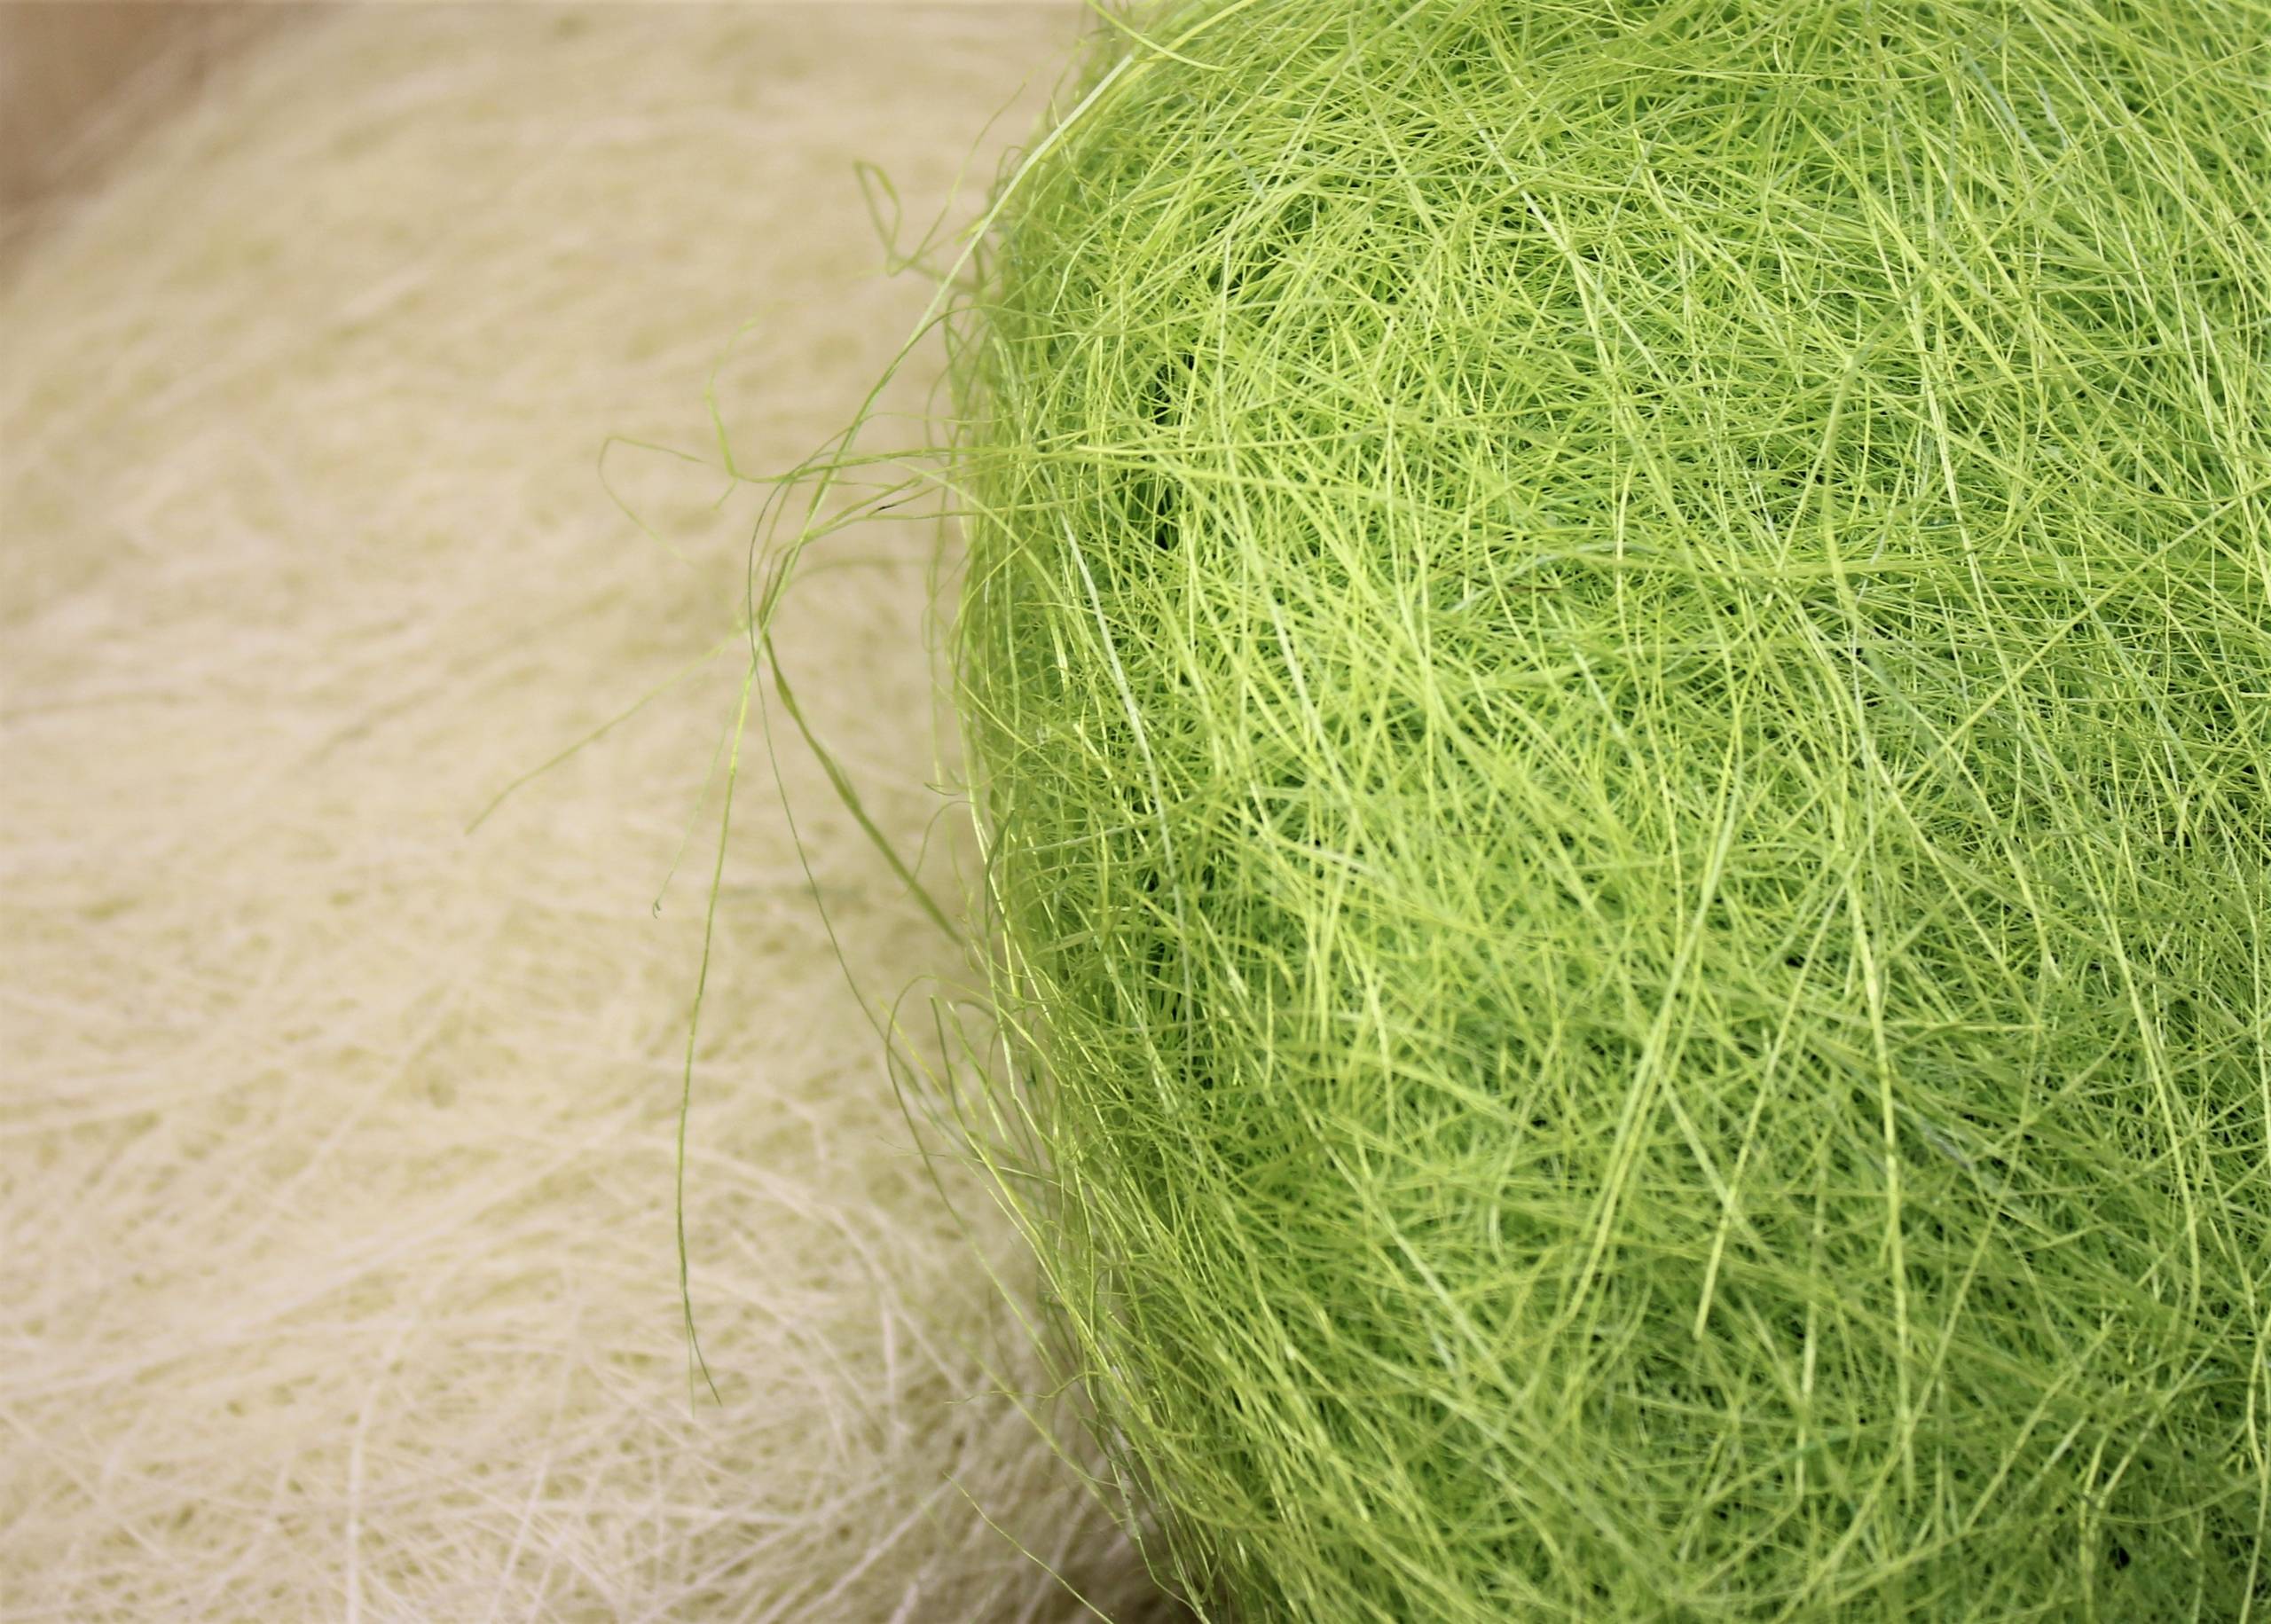 Сизаль — натуральное прочное волокно для поделок, банных принадлежностей, ковров и многого другого. долговечно, экологично, безопасно